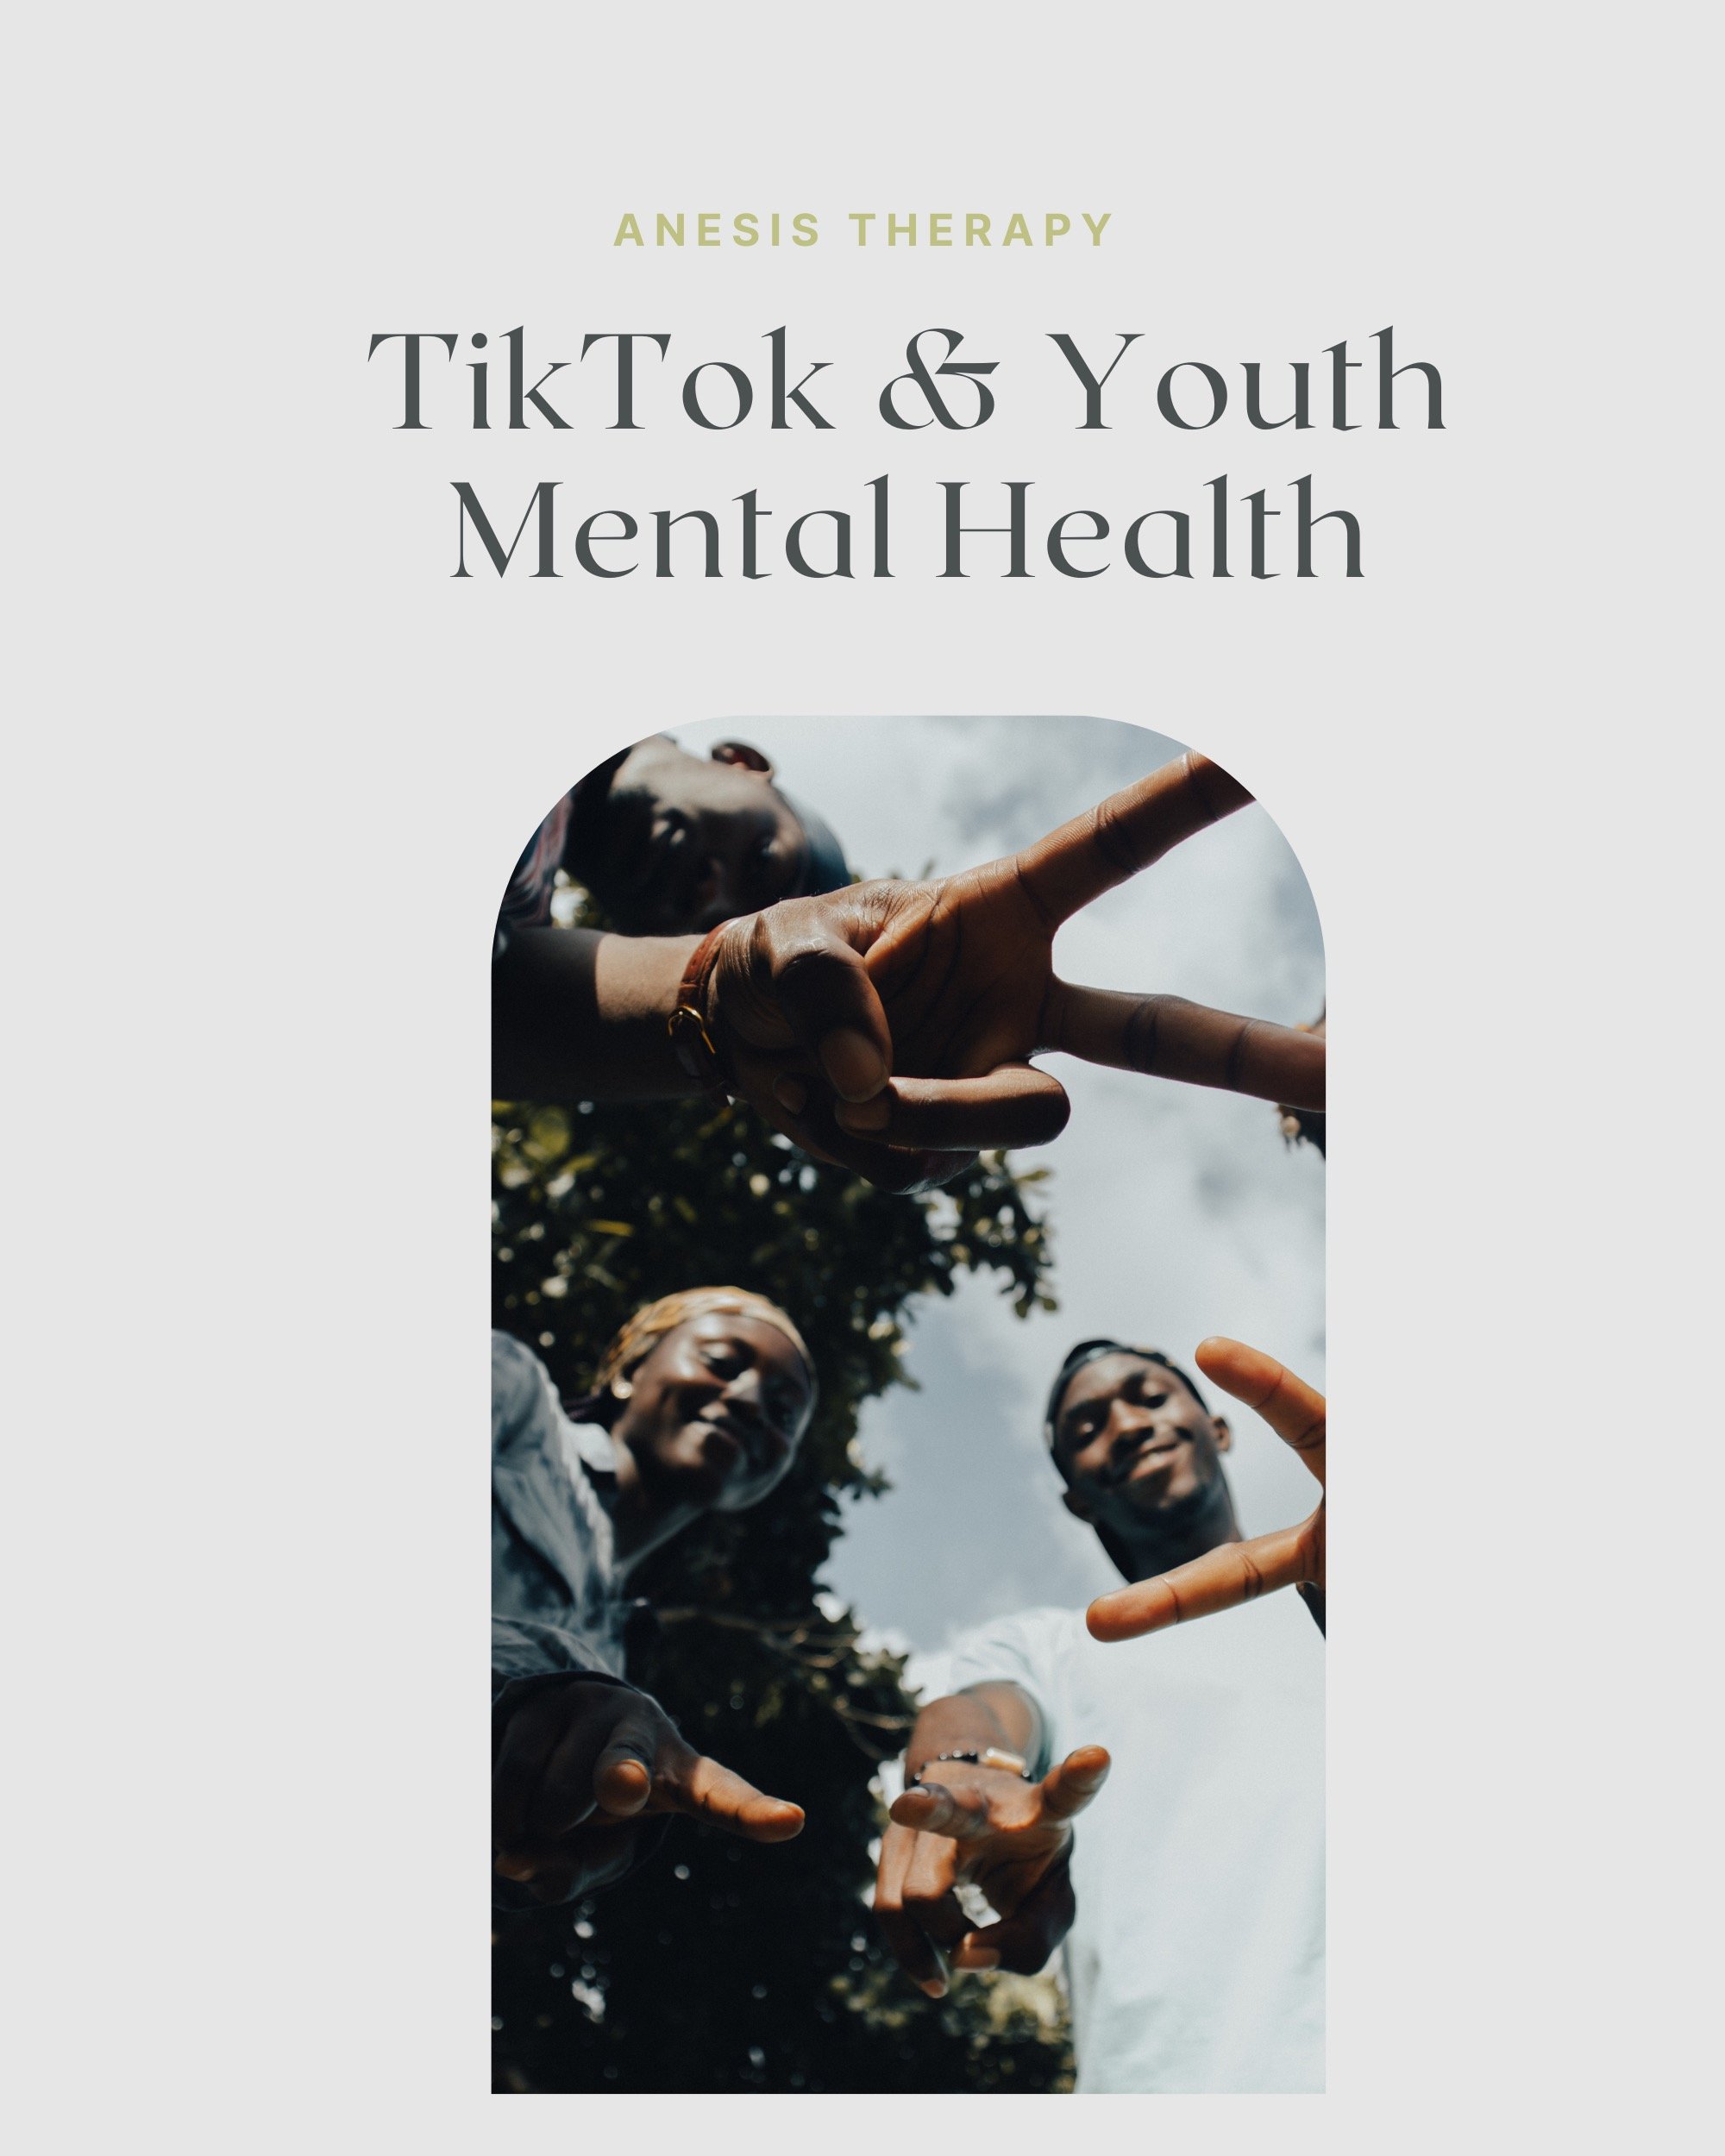                                                 Tik Tok y la salud mental de los jóvenes                                                                                            